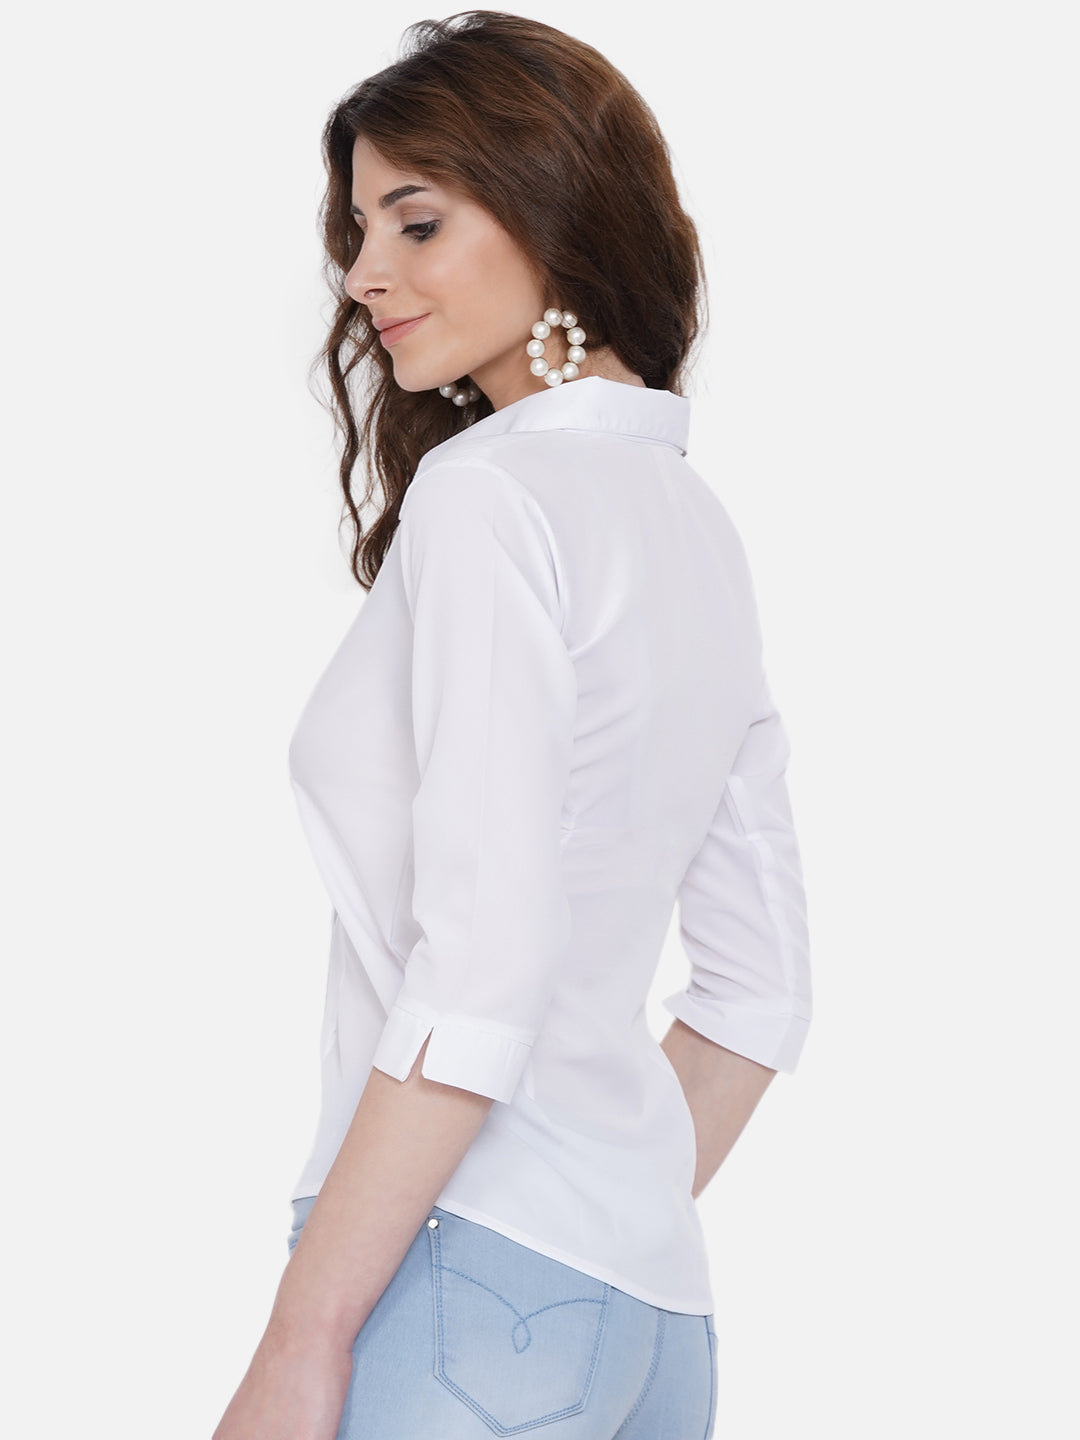 Women's White Casual Shirt - Wahe-Noor